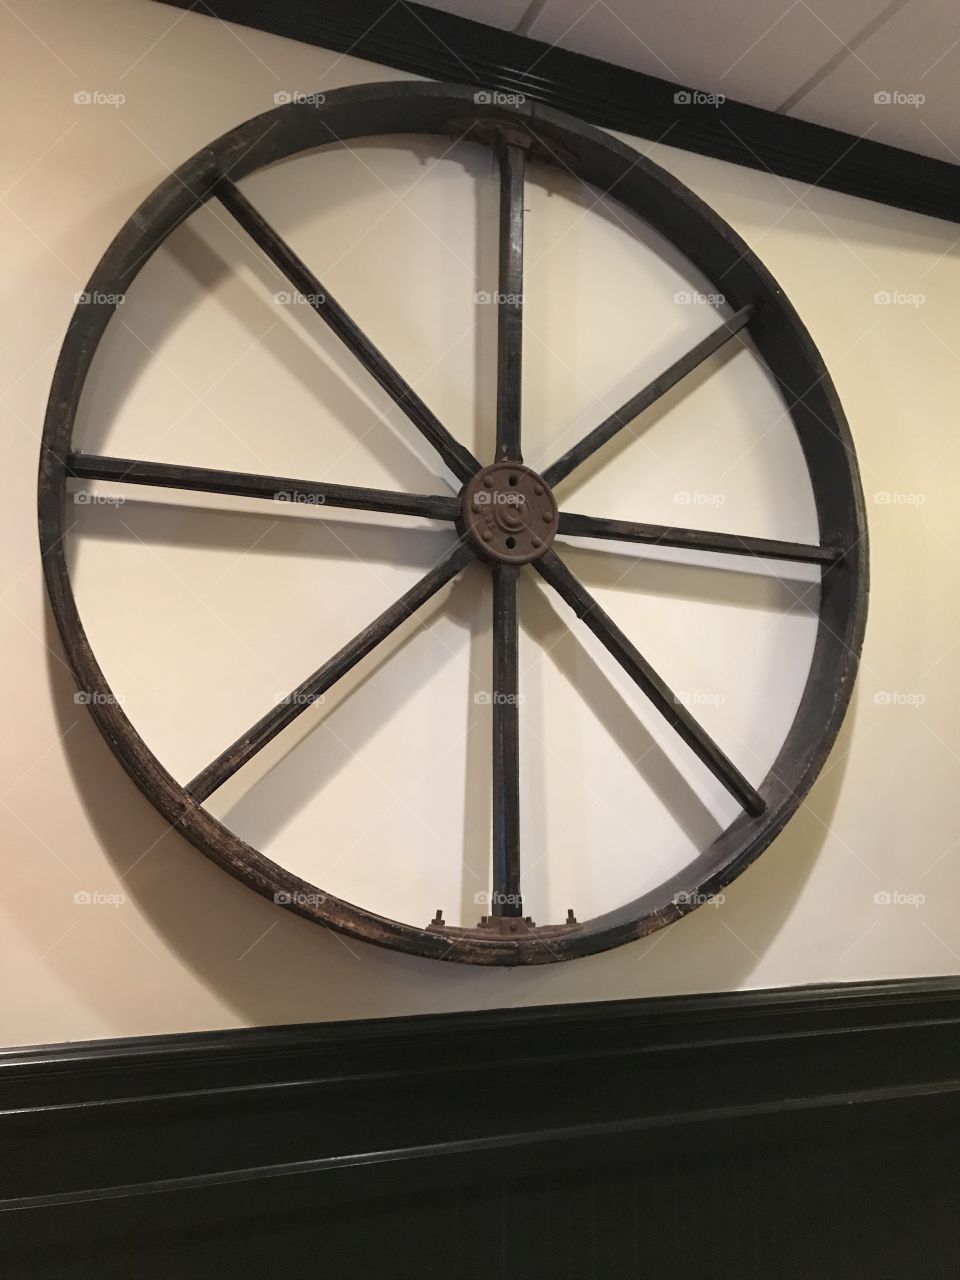 A wheel